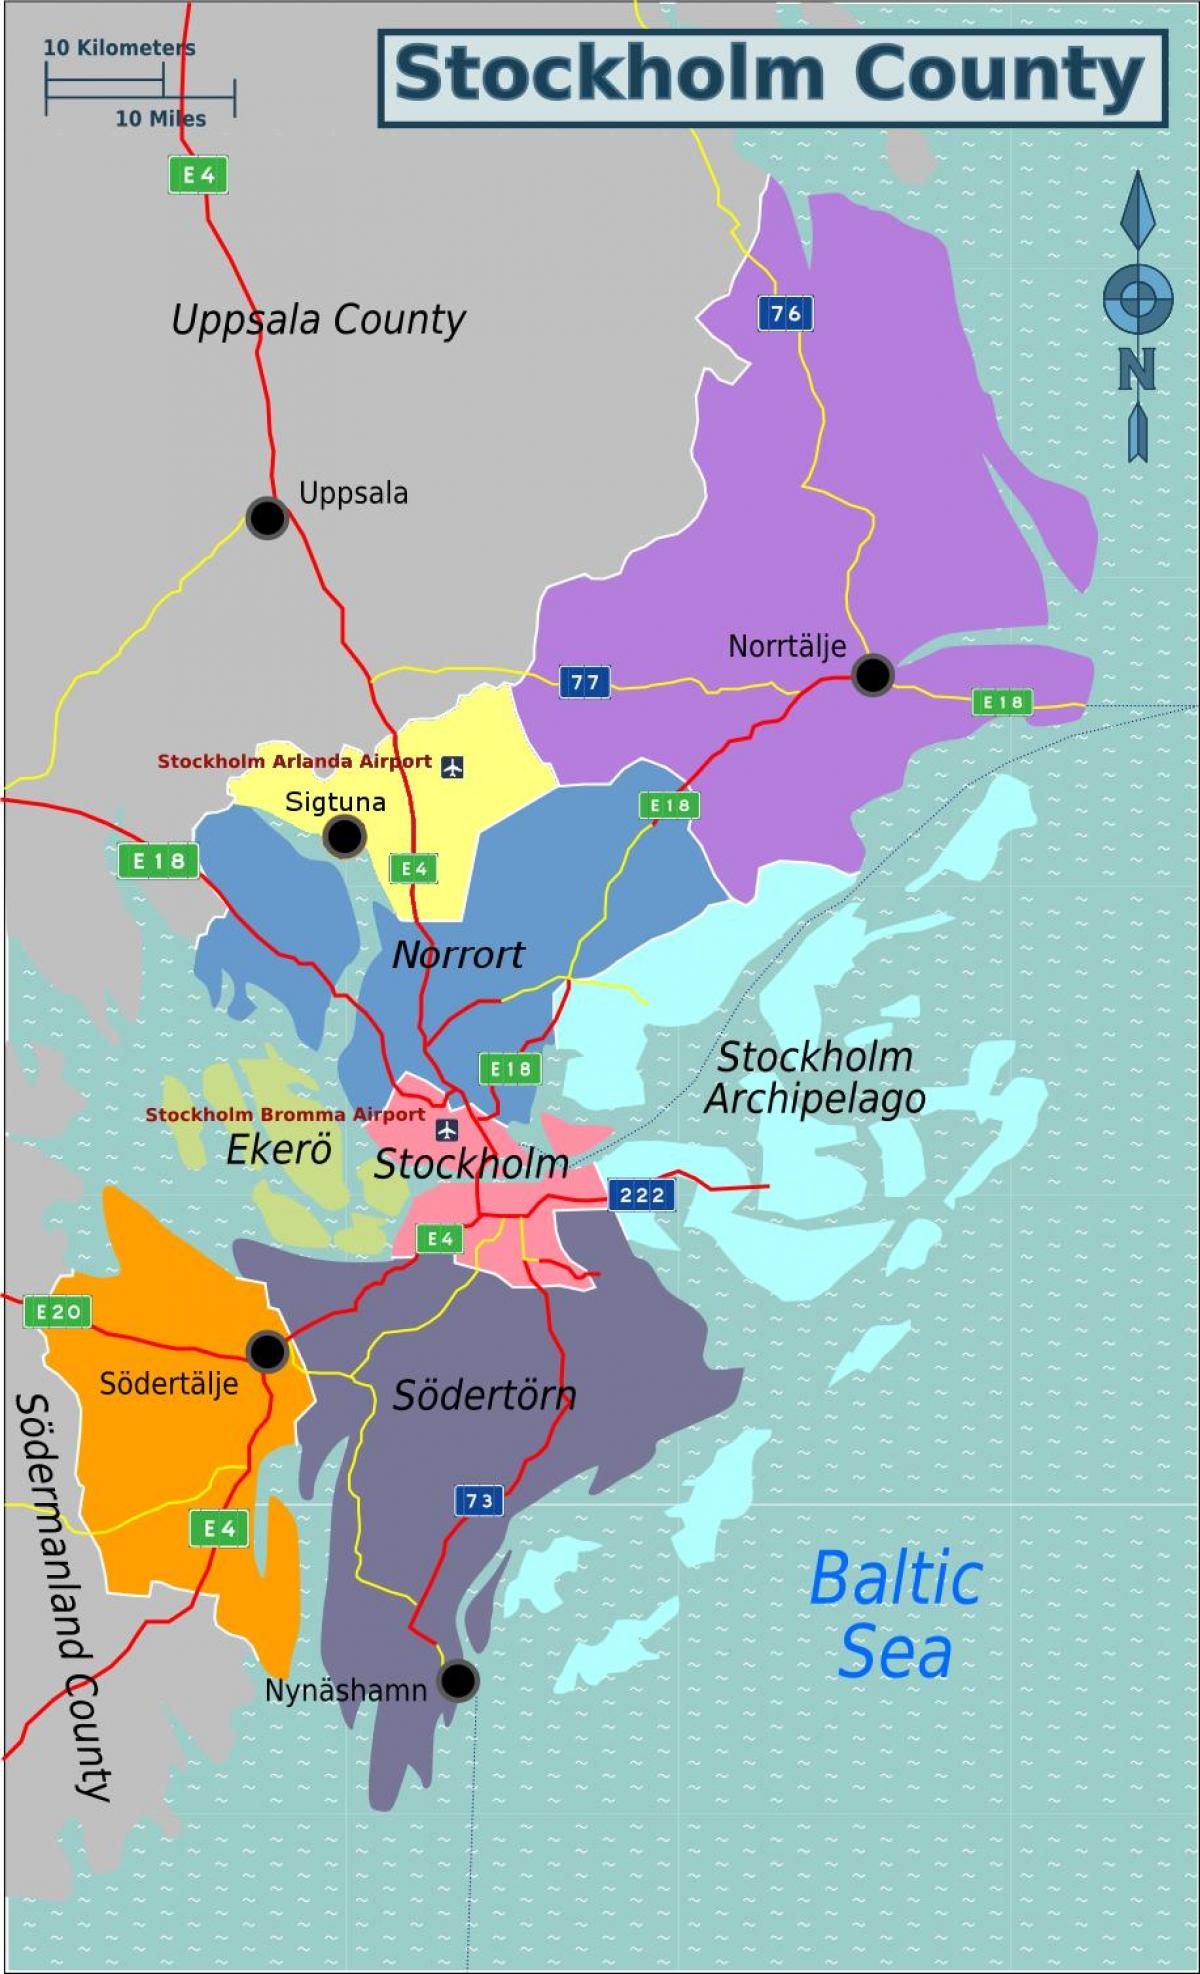 Karte der Stockholmer Vororten